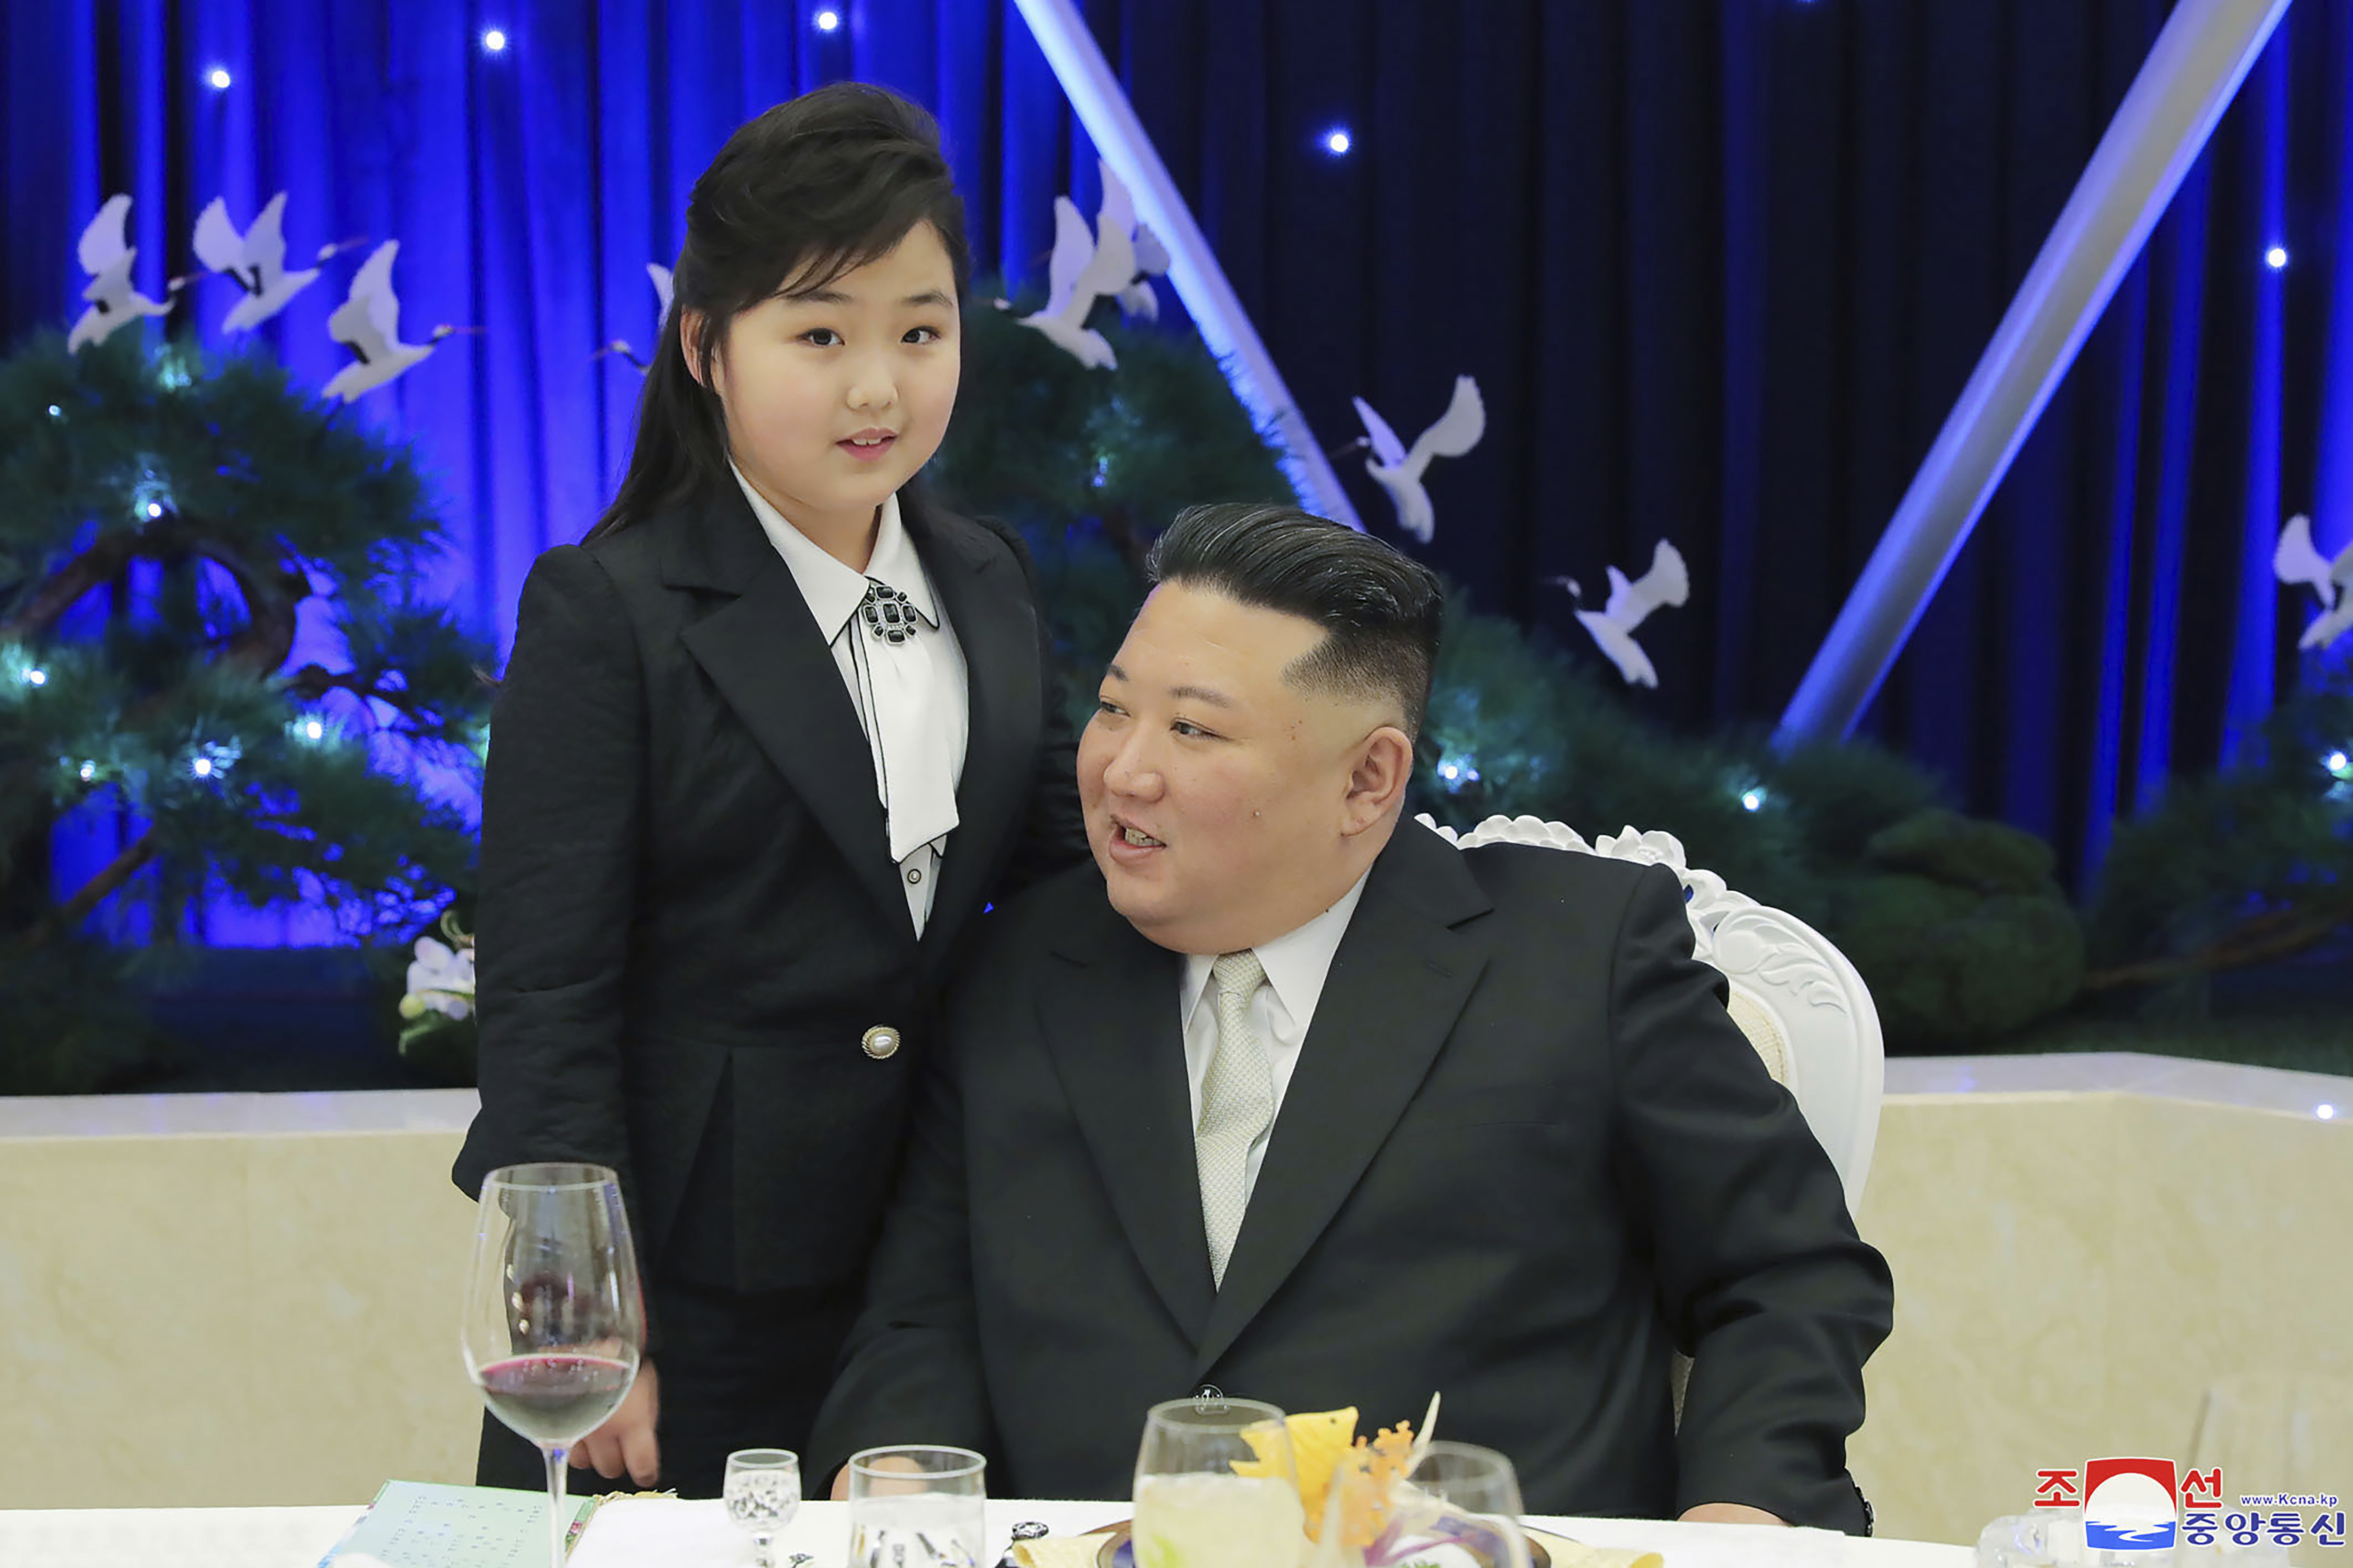 El líder norcoreano Kim Jong Un y su hija asisten a una fiesta para conmemorar el 75 aniversario de la fundación del Ejército Popular de Corea en un lugar no especificado en Corea del Norte. 